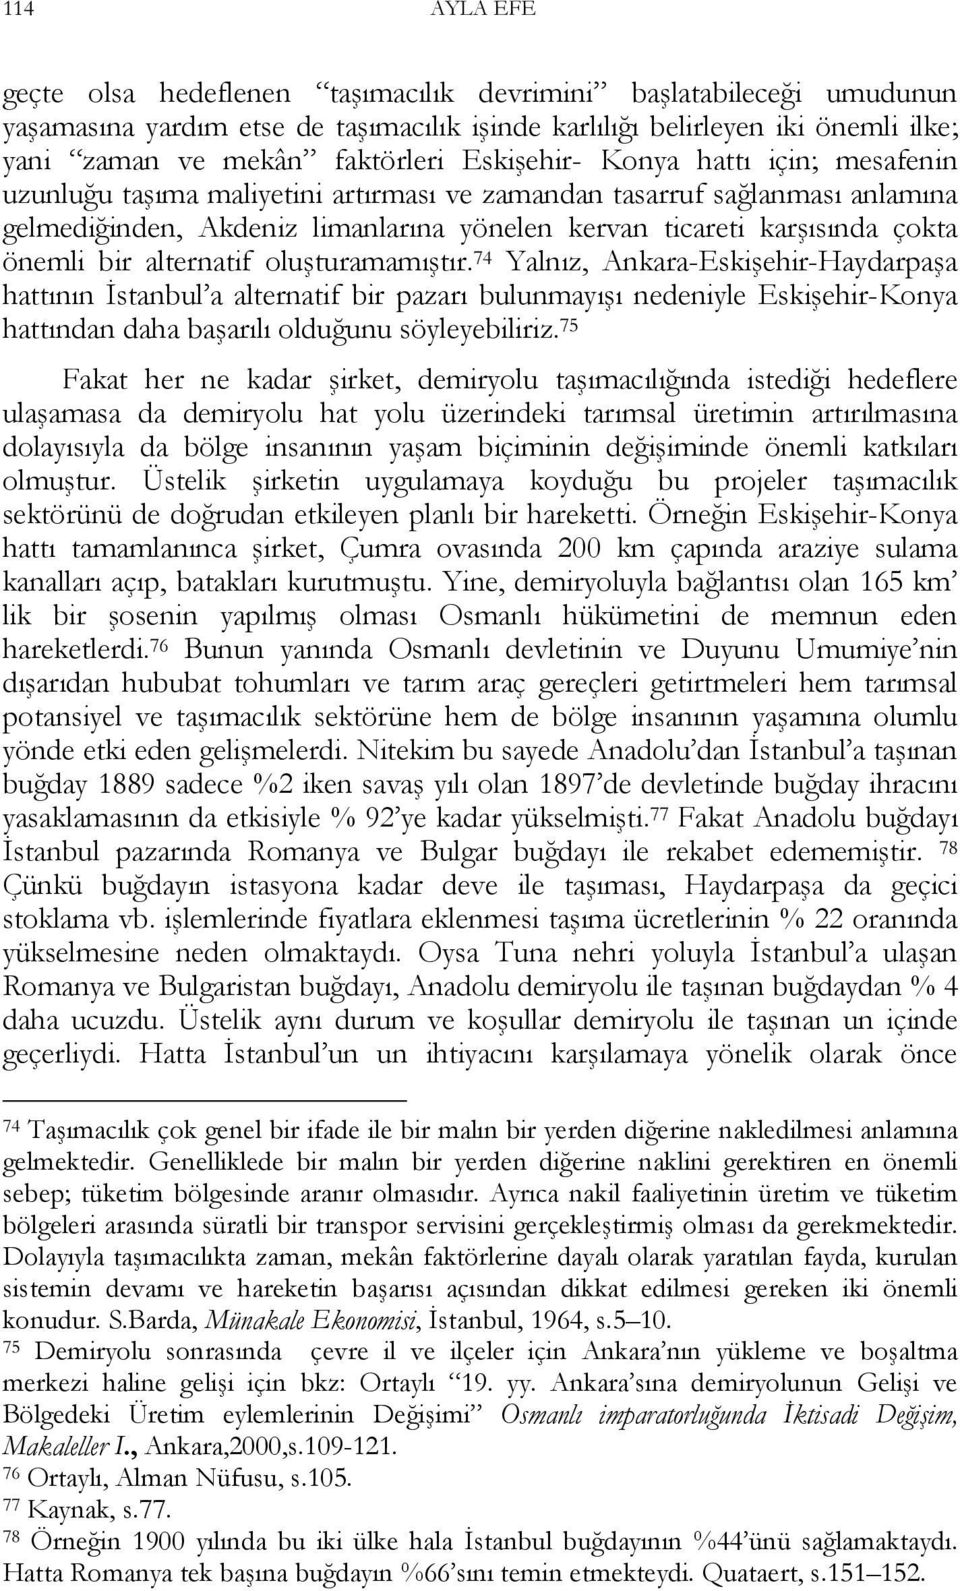 bir alternatif oluşturamamıştır. 74 Yalnız, Ankara-Eskişehir-Haydarpaşa hattının İstanbul a alternatif bir pazarı bulunmayışı nedeniyle Eskişehir-Konya hattından daha başarılı olduğunu söyleyebiliriz.